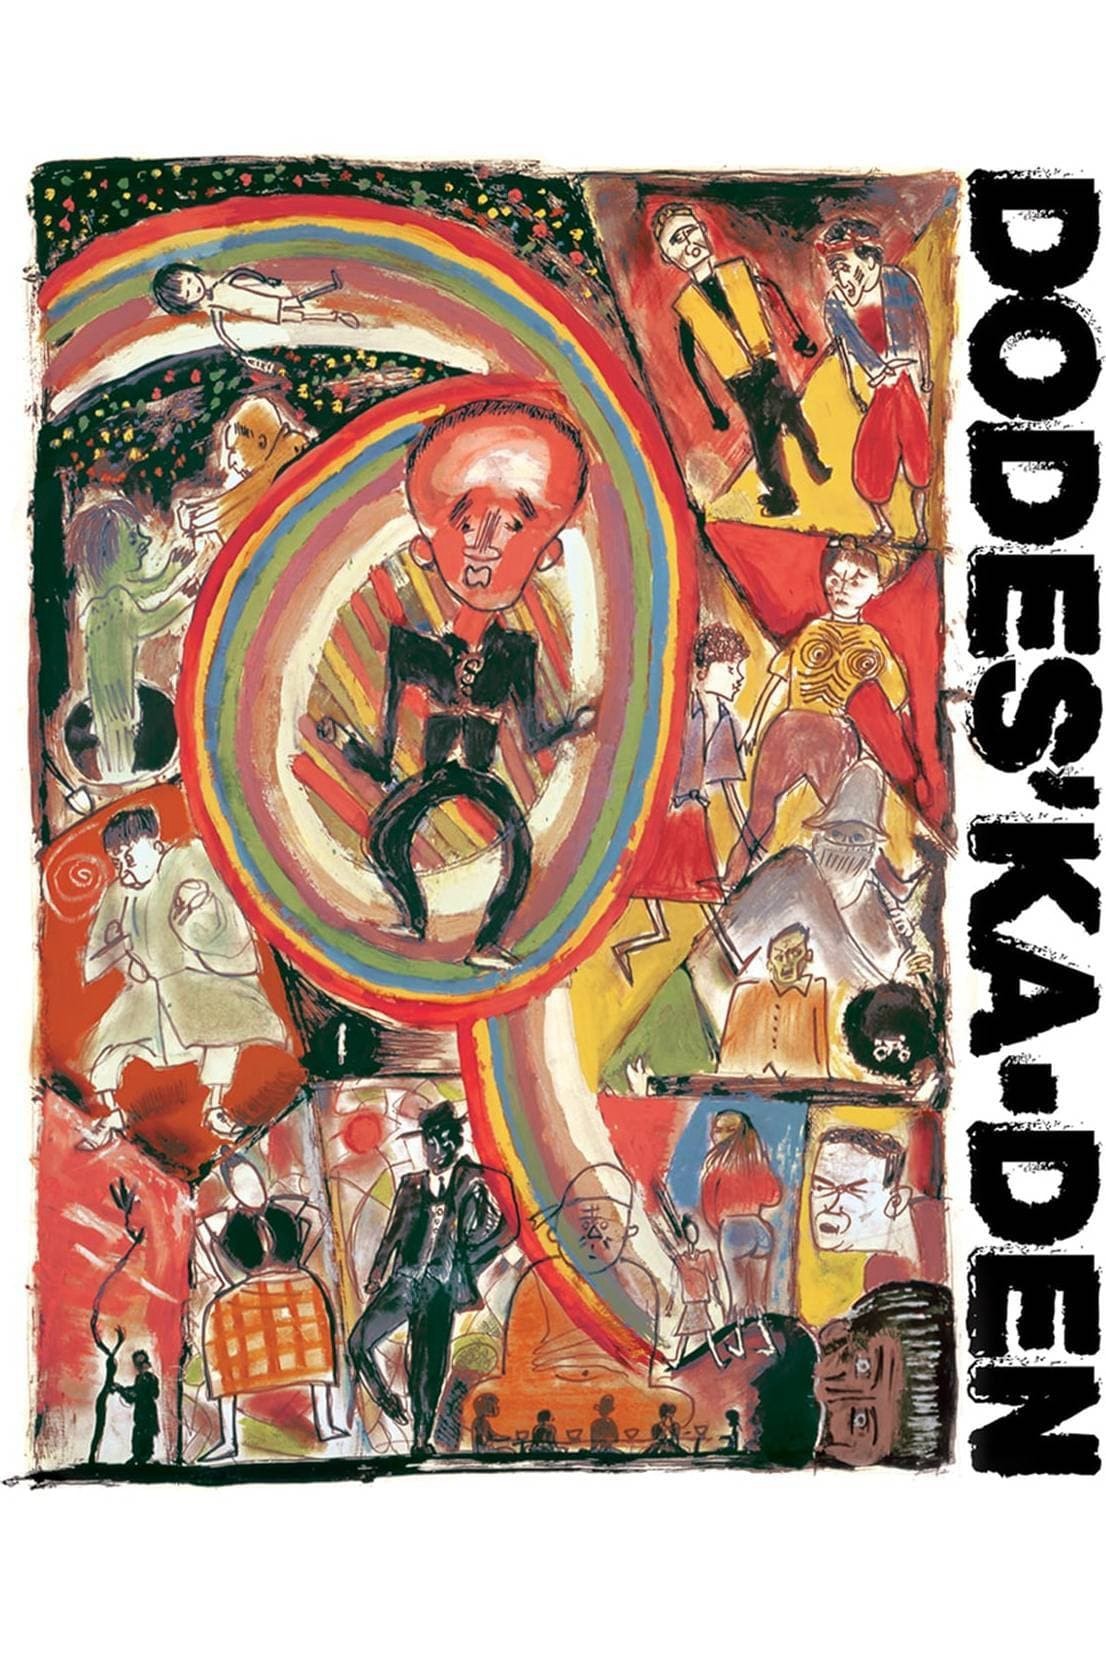 Dodes'ka-den - Dodes'ka-den (1970)